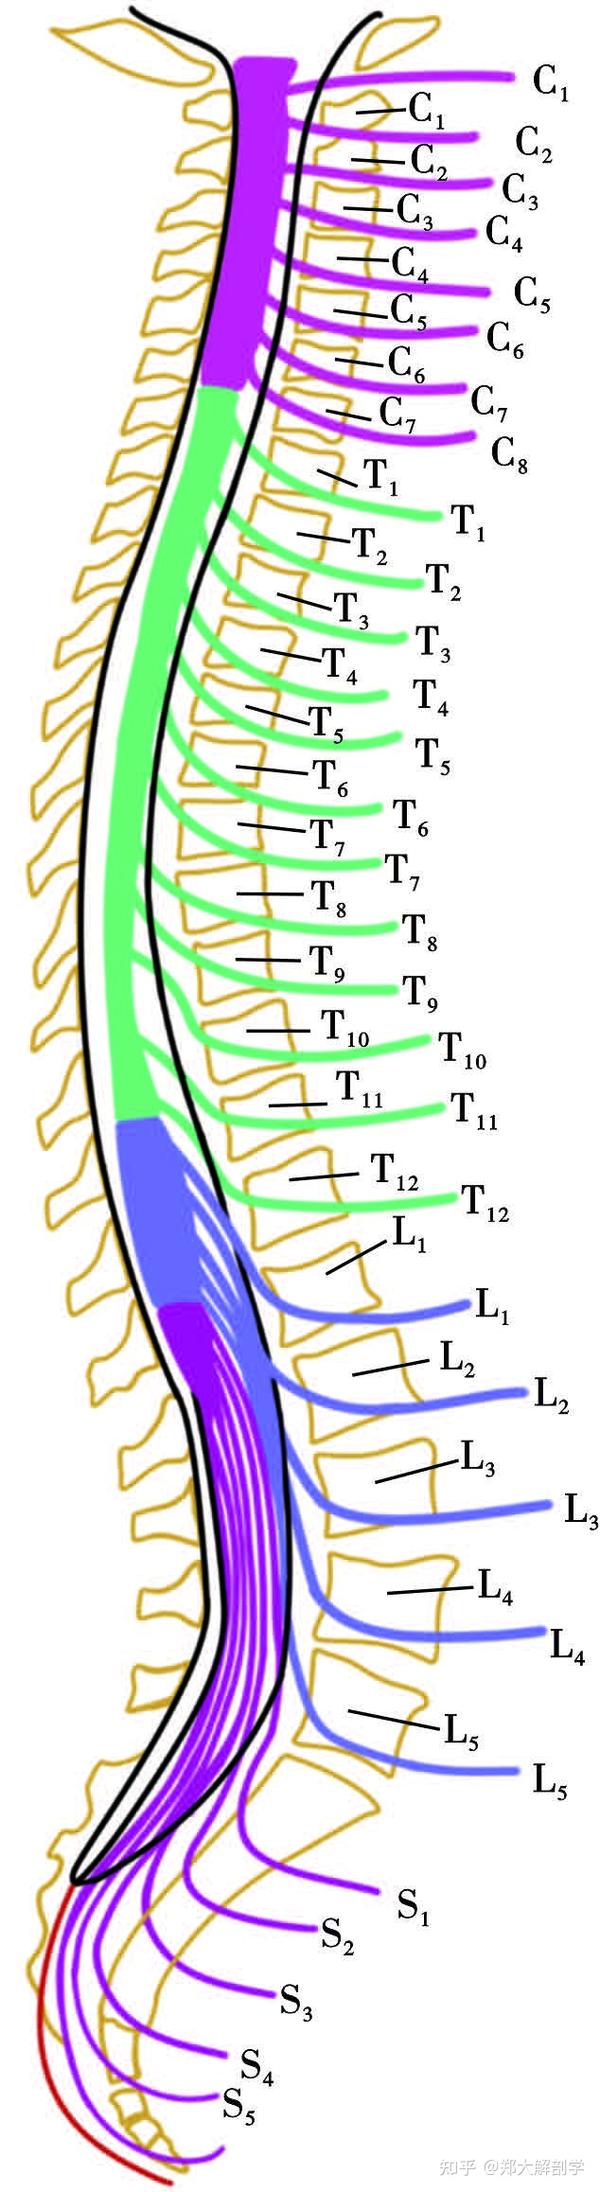 脊神经整体概览